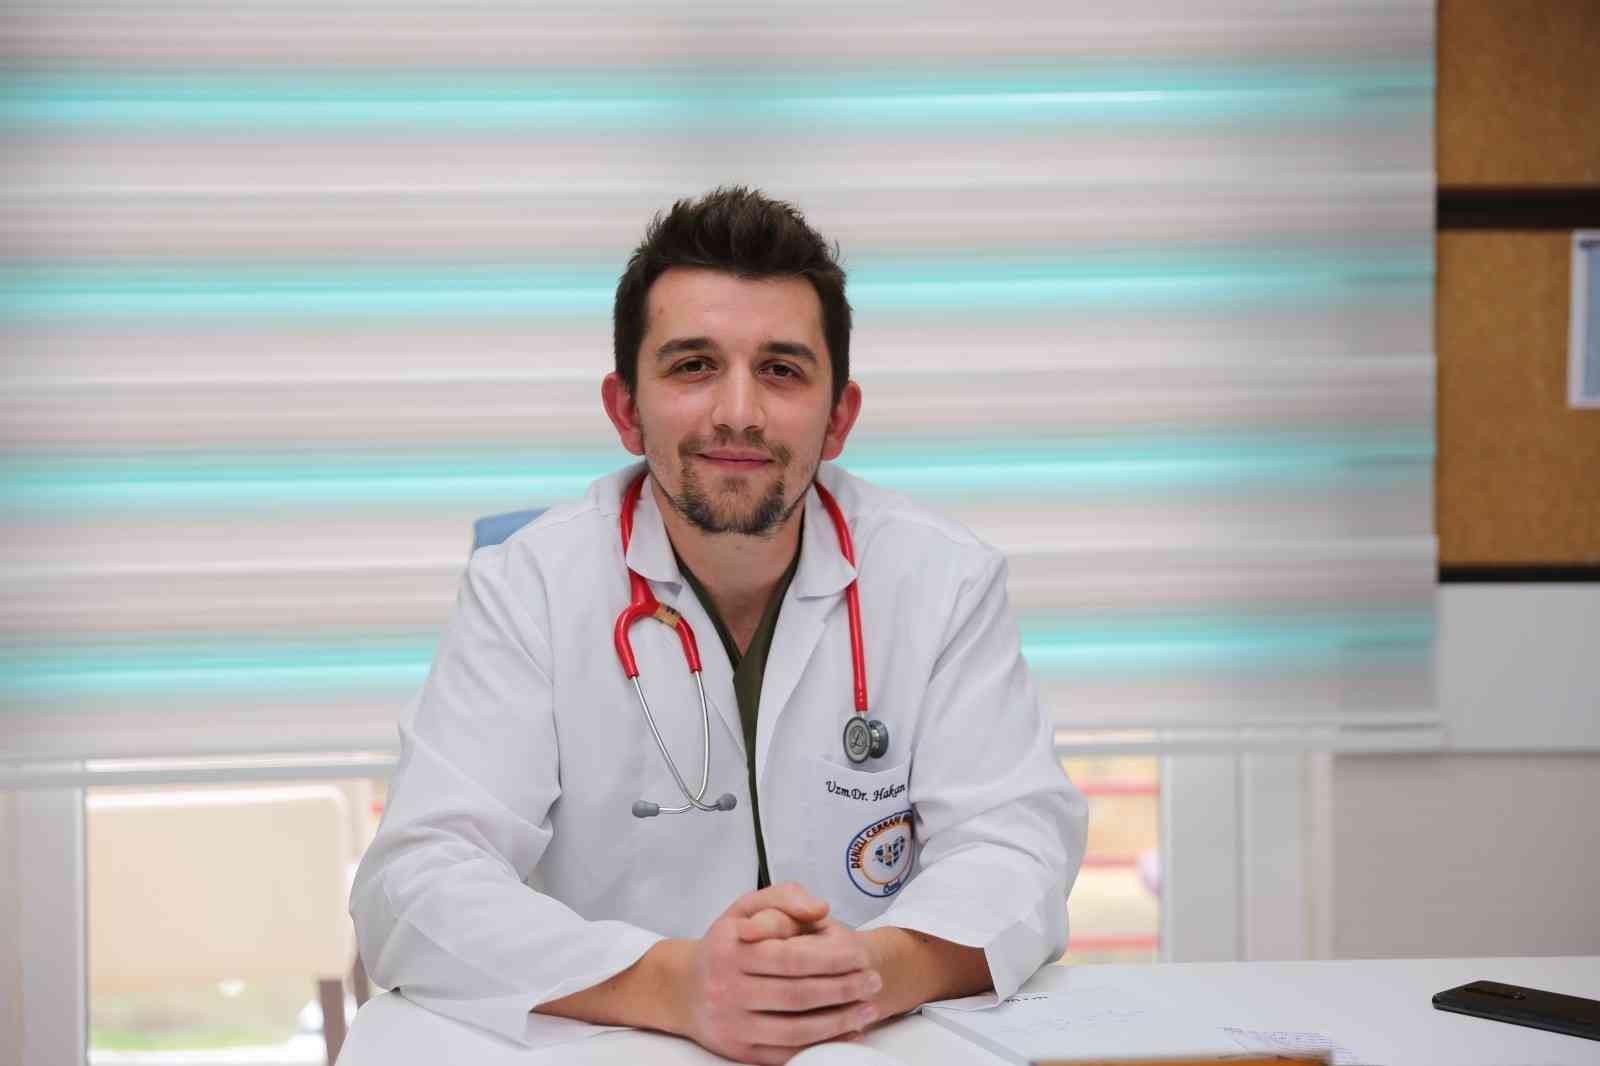 Çocuk Sağlığı ve Hastalıkları Uzmanı Dr. Hakan Çakır, Cerrahi’de göreve başladı #denizli